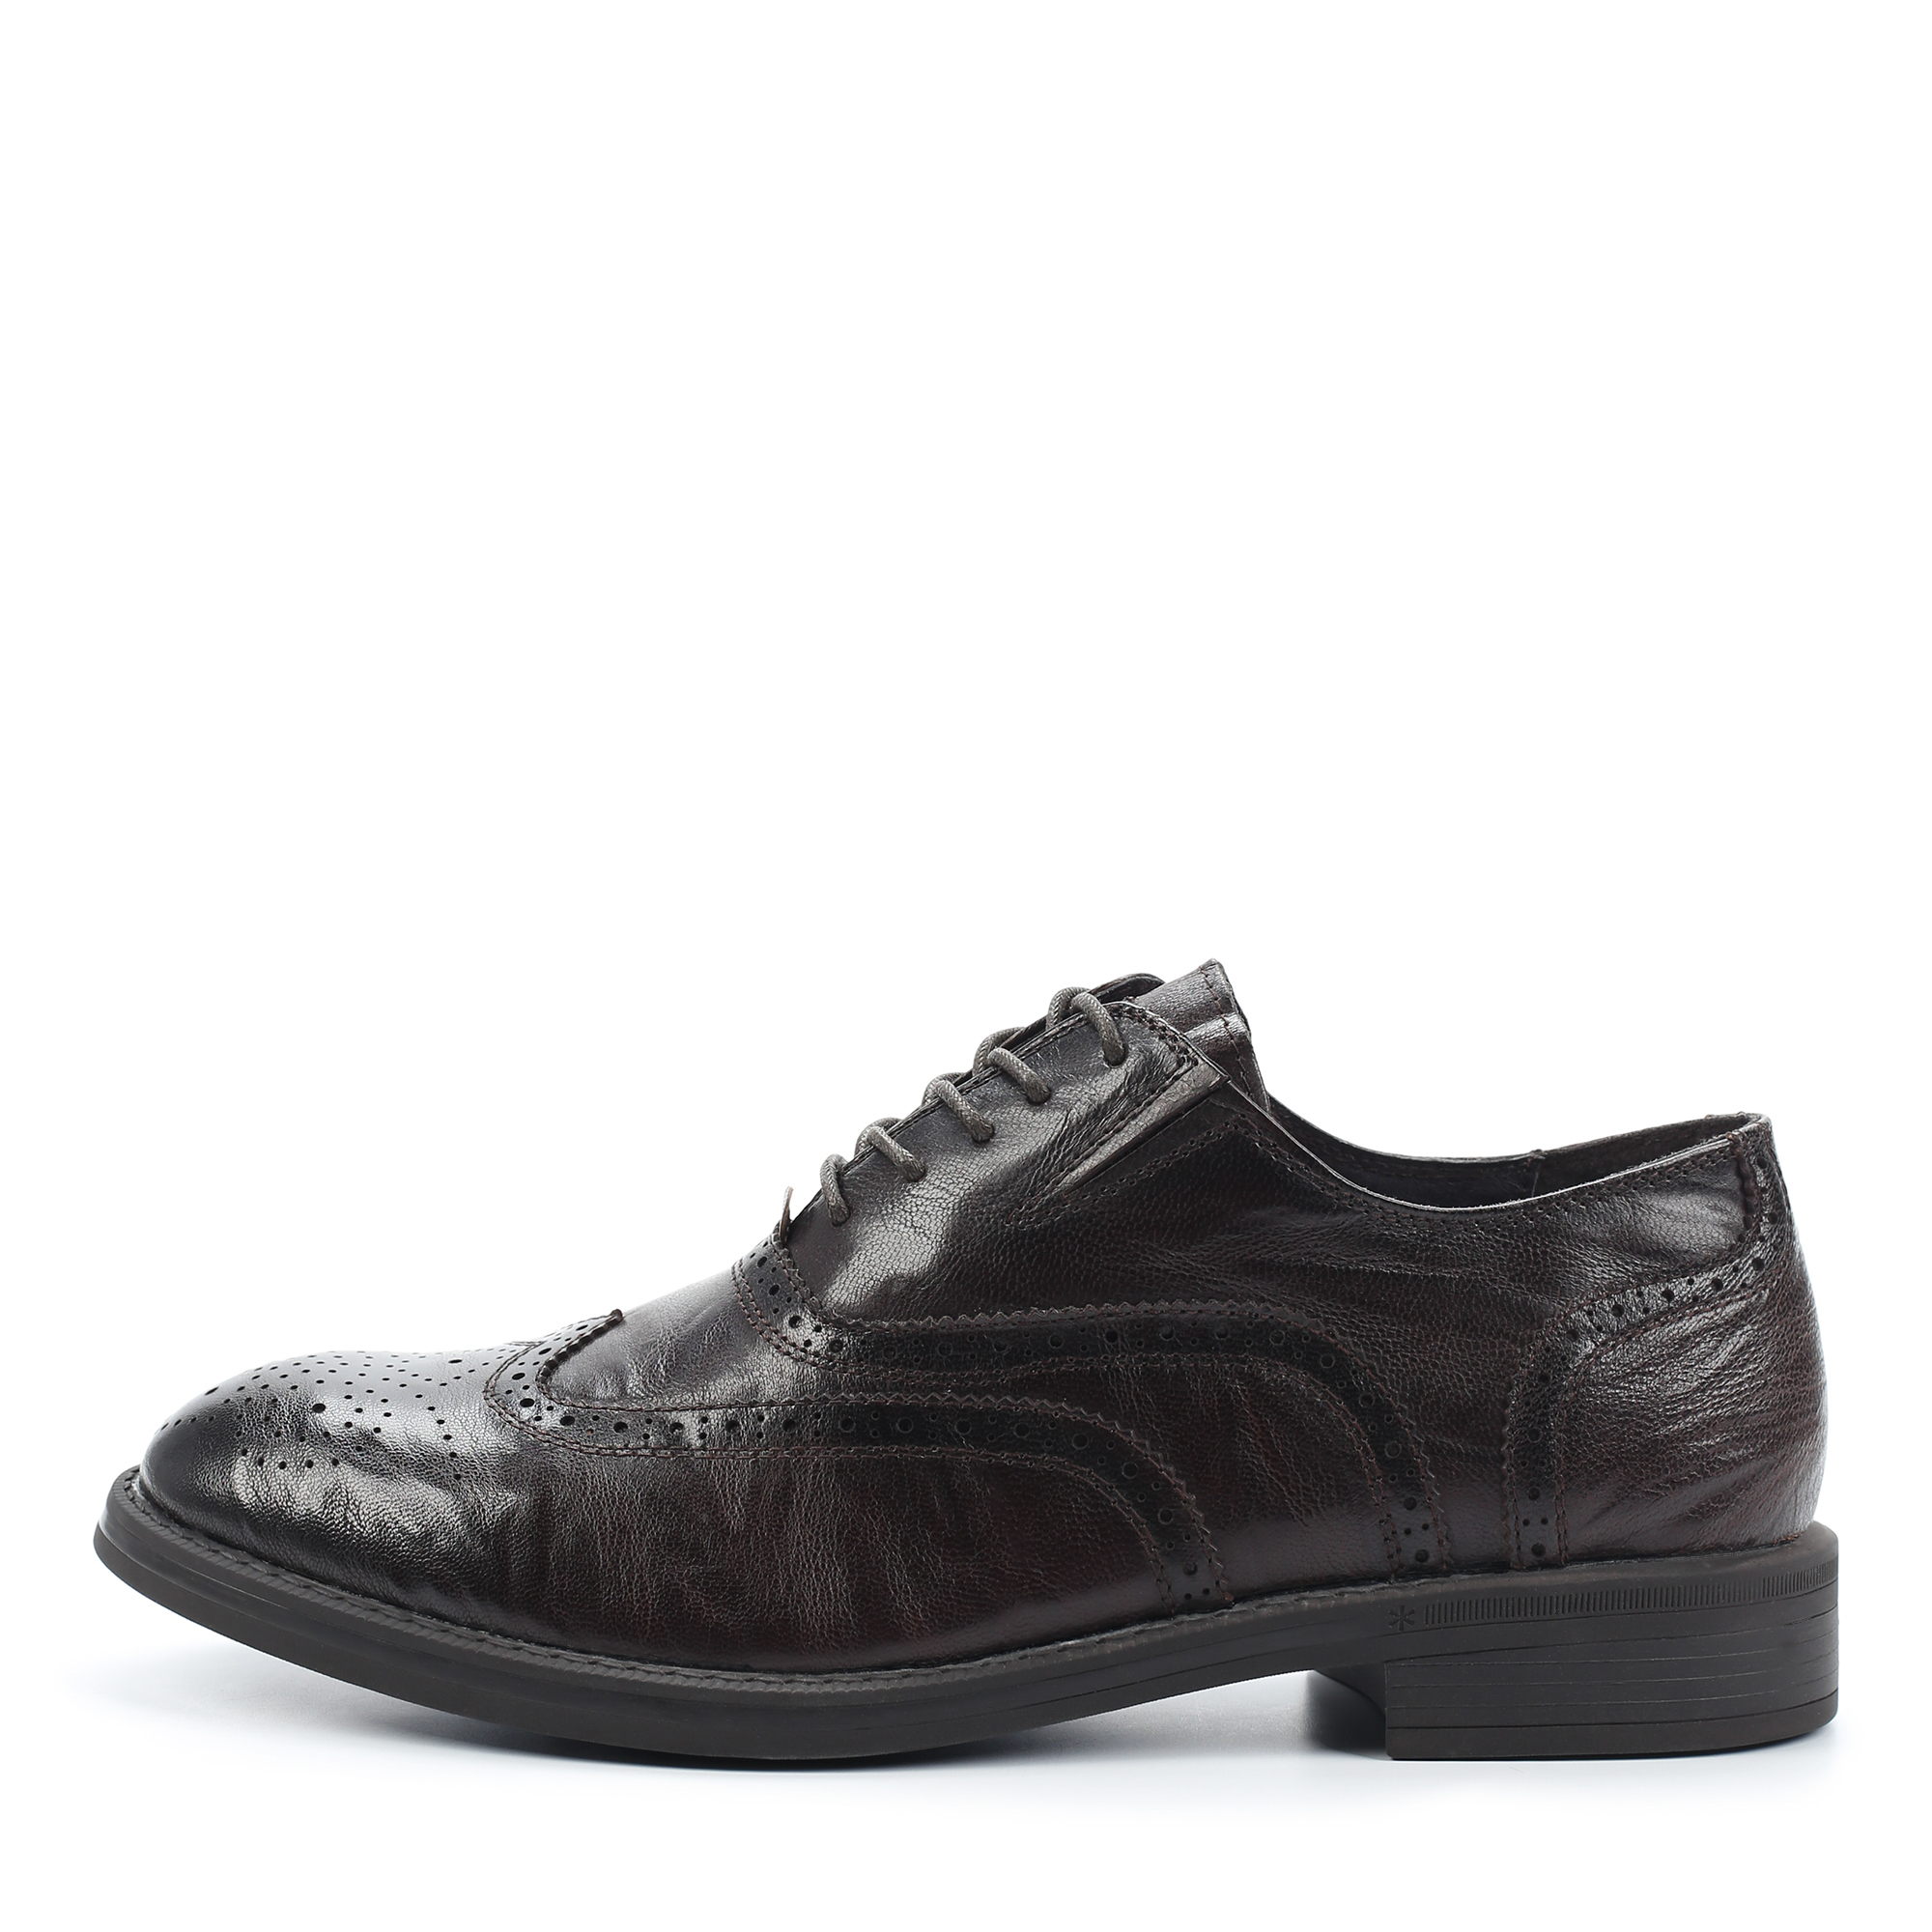 Туфли/полуботинки Thomas Munz 073-751A-1109, цвет темно-коричневый, размер 41